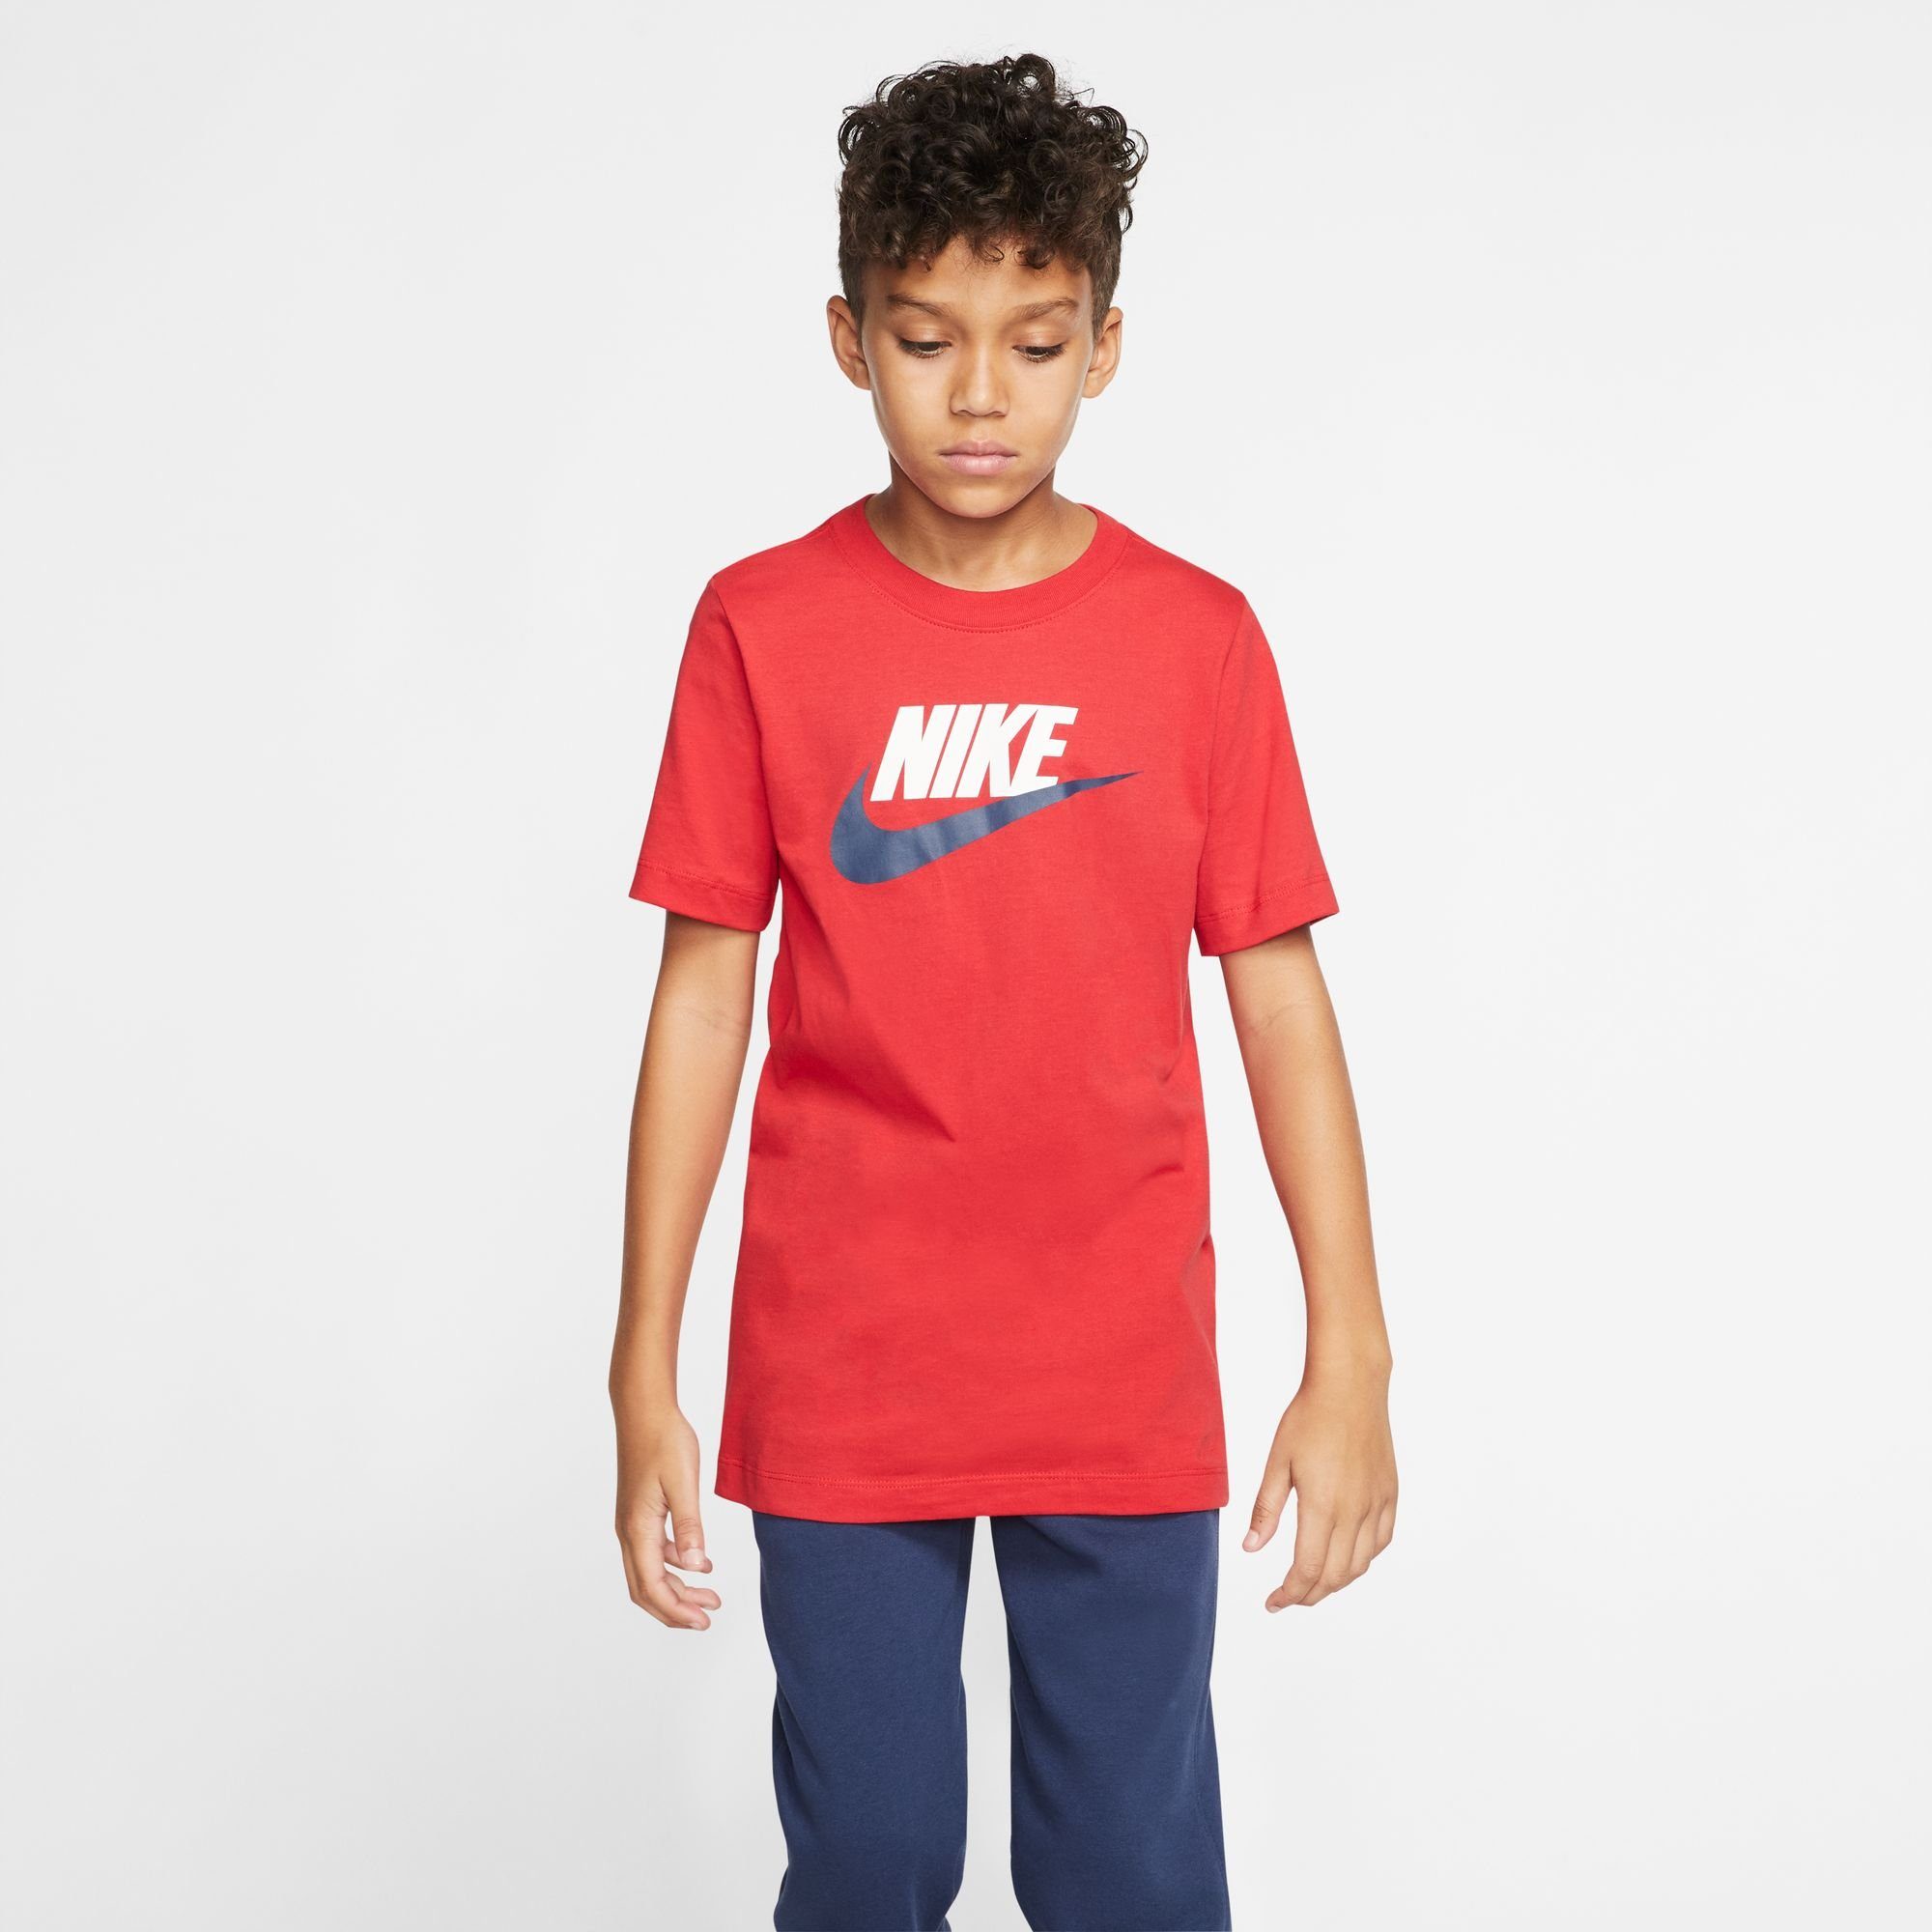 KIDS' Nike COTTON Sportswear T-SHIRT BIG rot T-Shirt